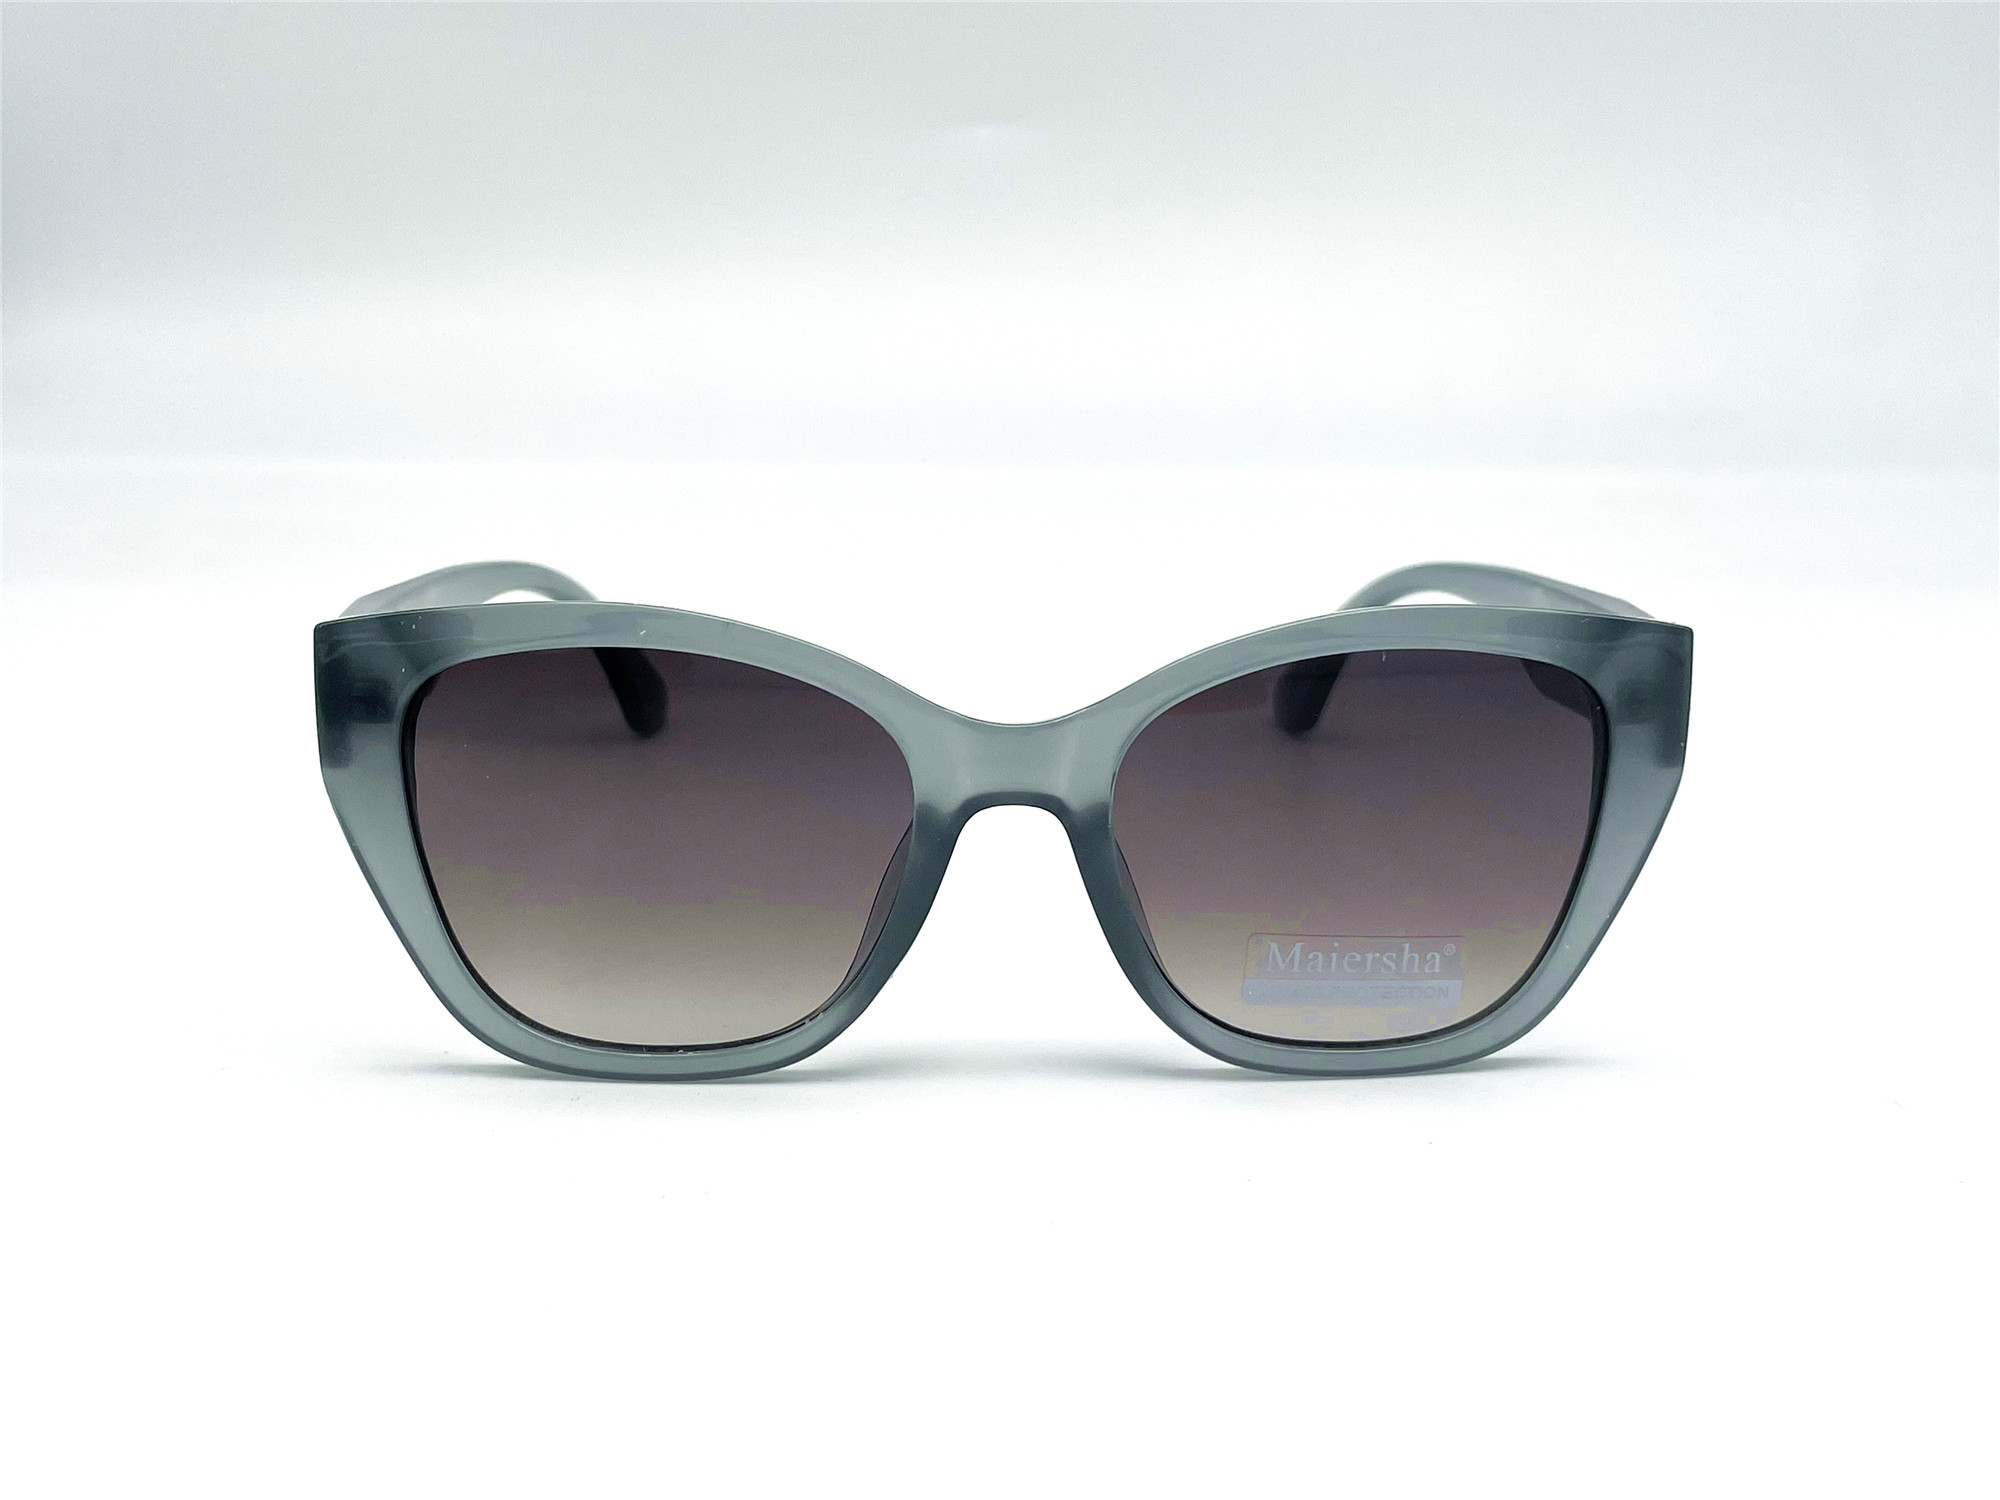  Солнцезащитные очки картинка Женские Maiersha  Классический 3790-C6 